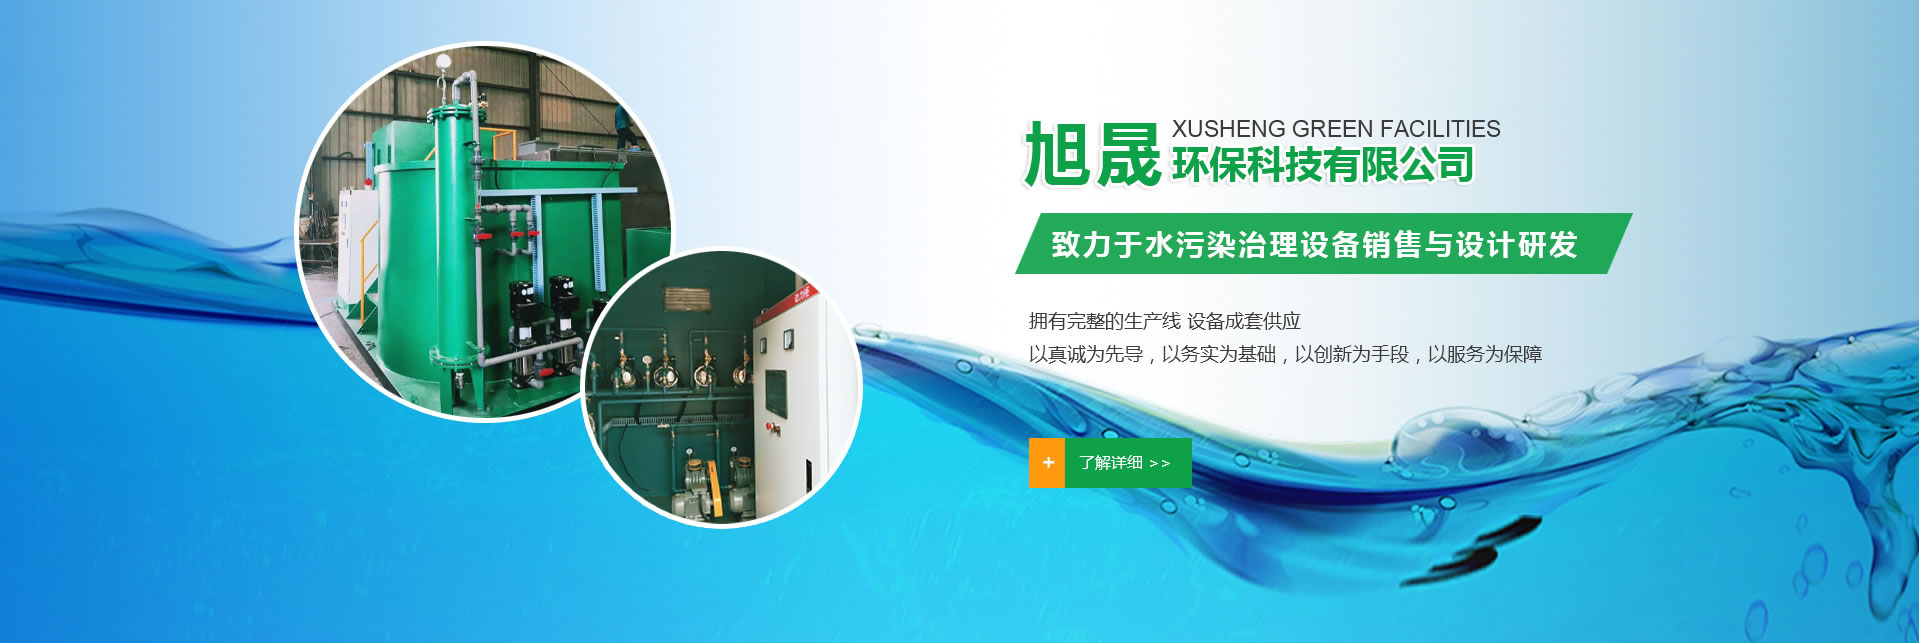 洛阳旭晟环保专注于医院污水处理设备的研究与生产